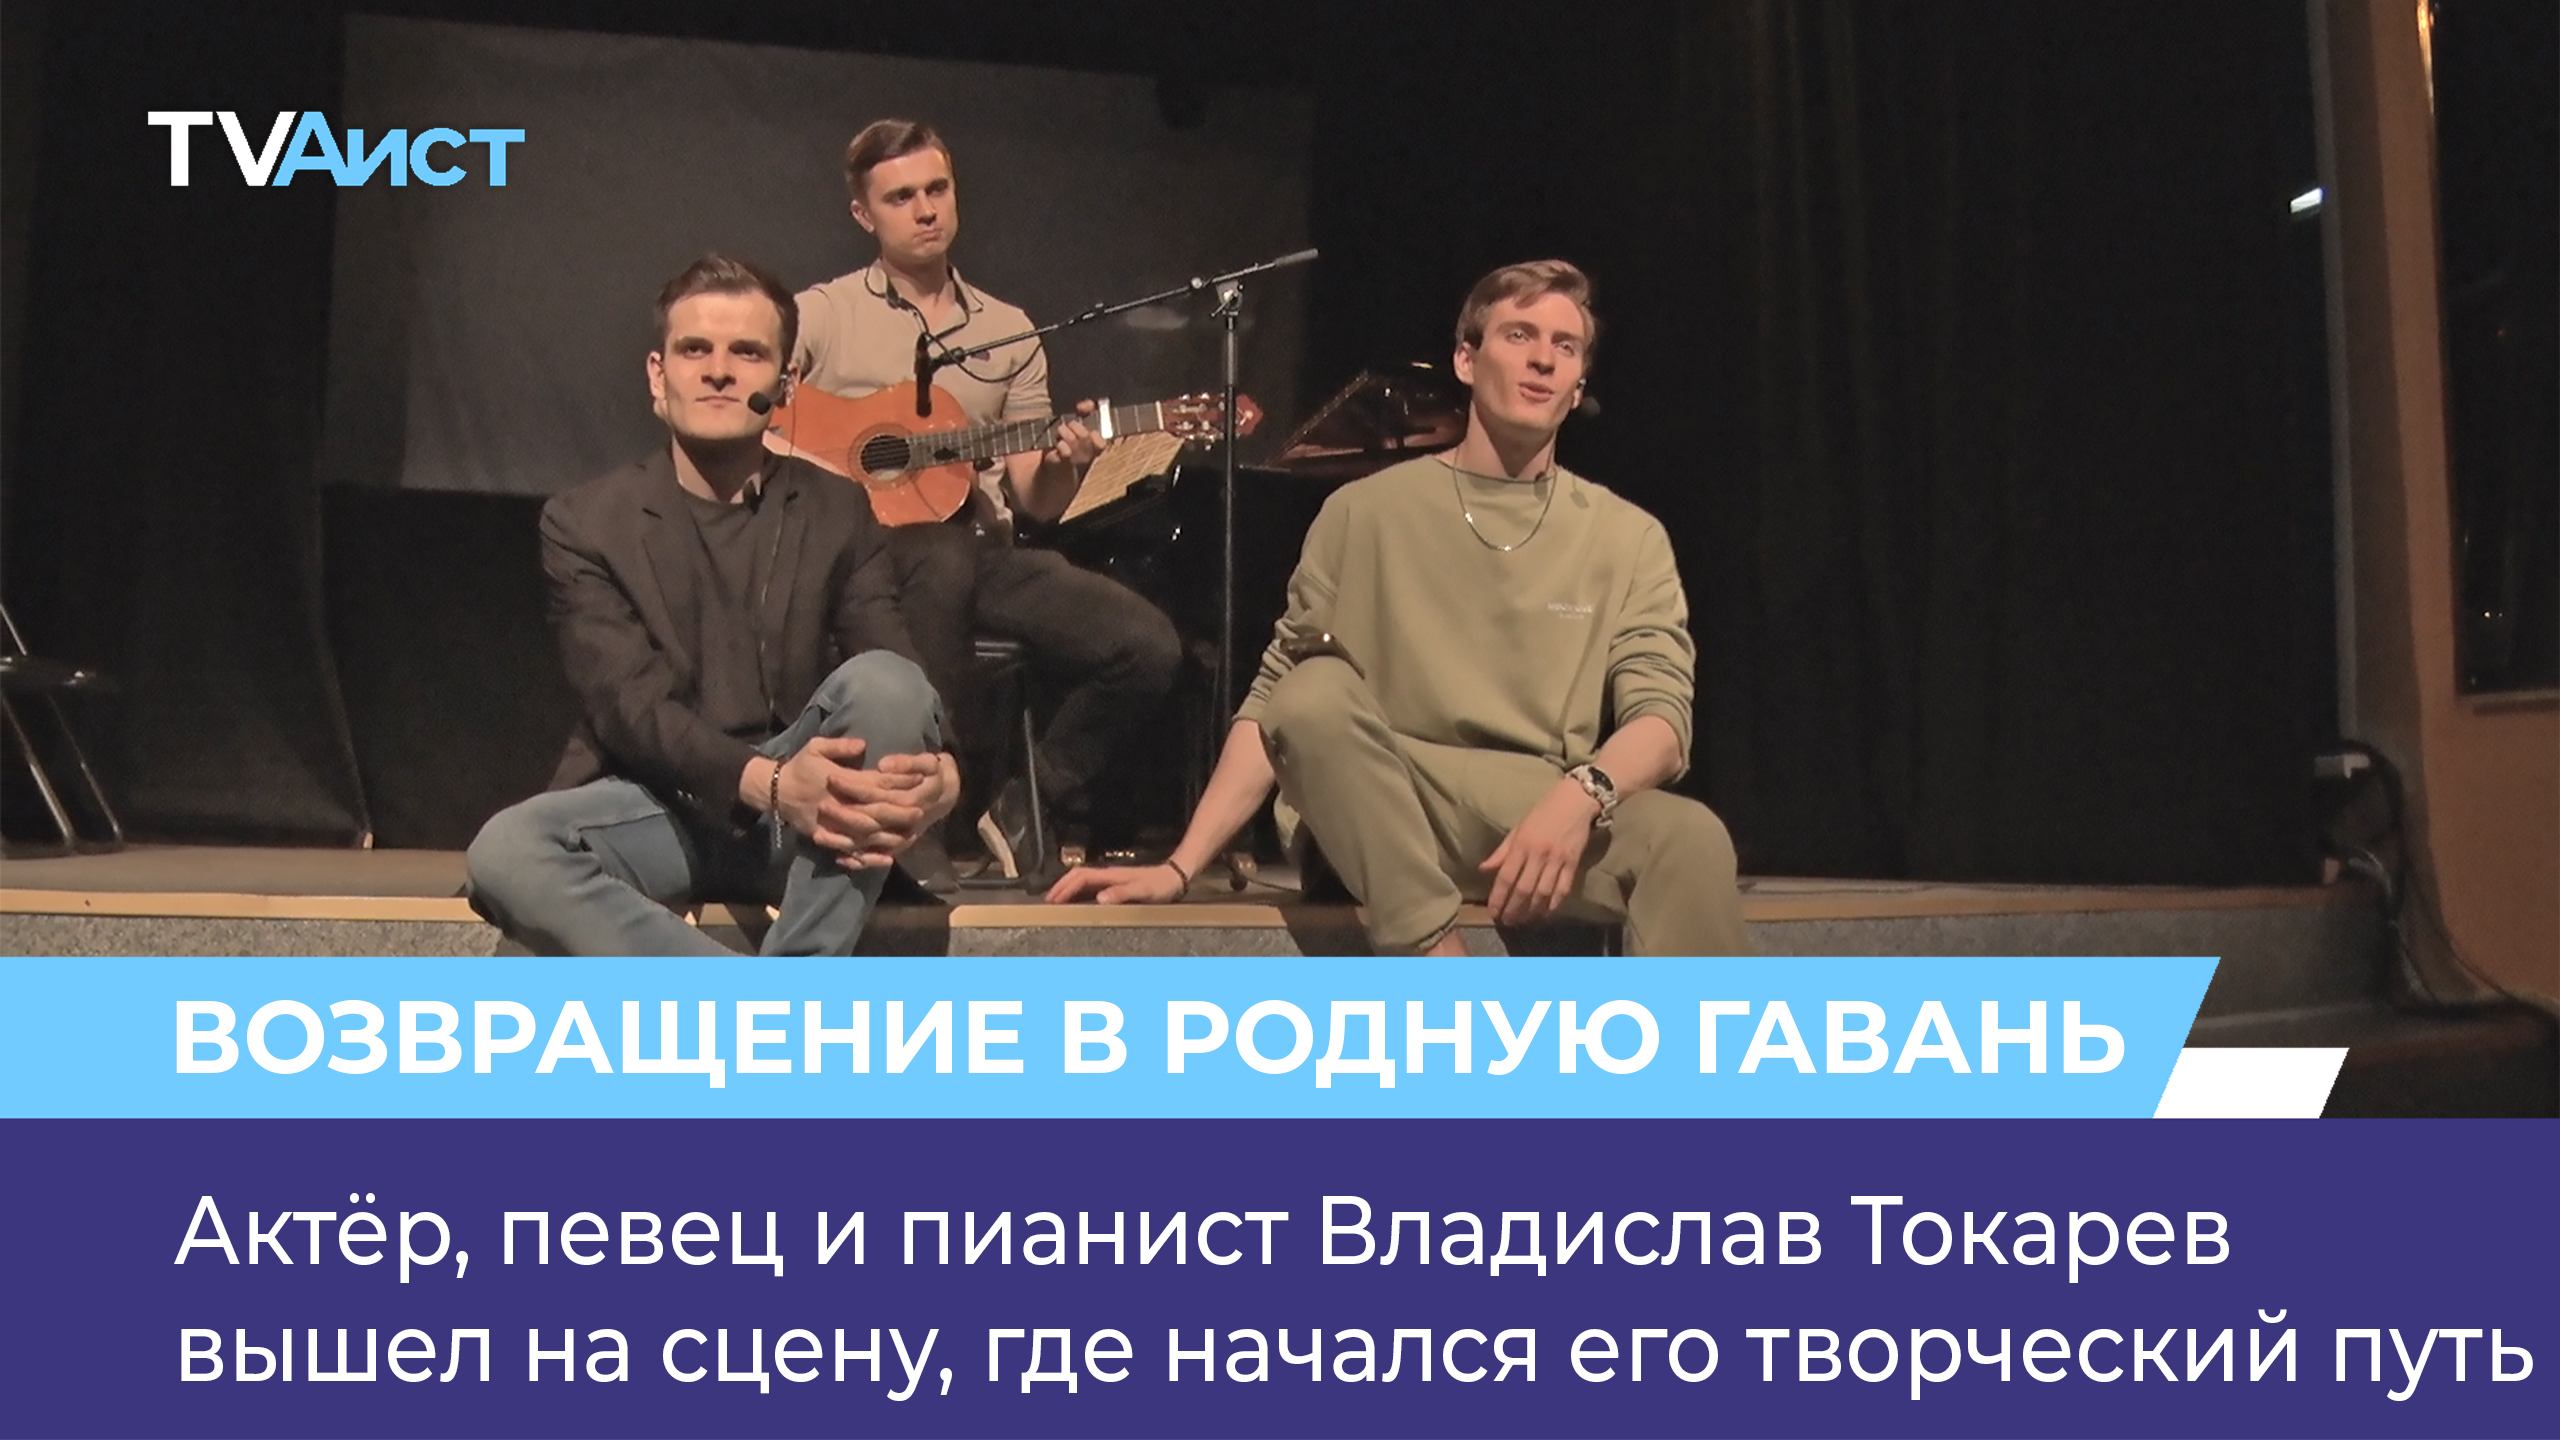 Актёр, певец и пианист Владислав Токарев вышел на сцену, где начался его творческий путь